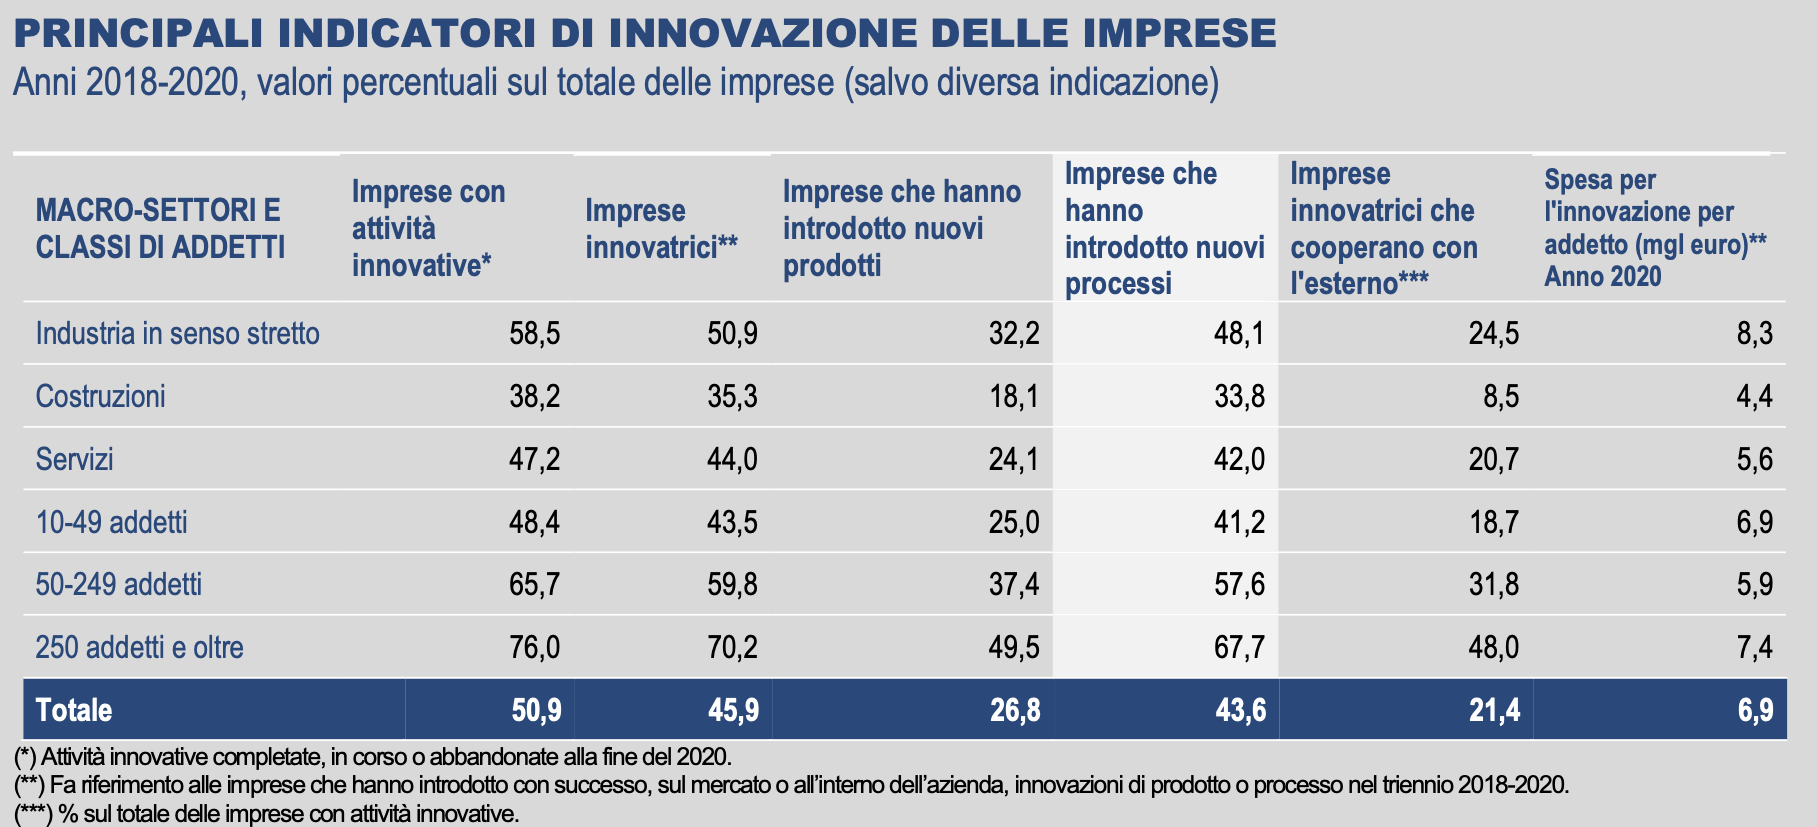 innovazione delle imprese in Italia